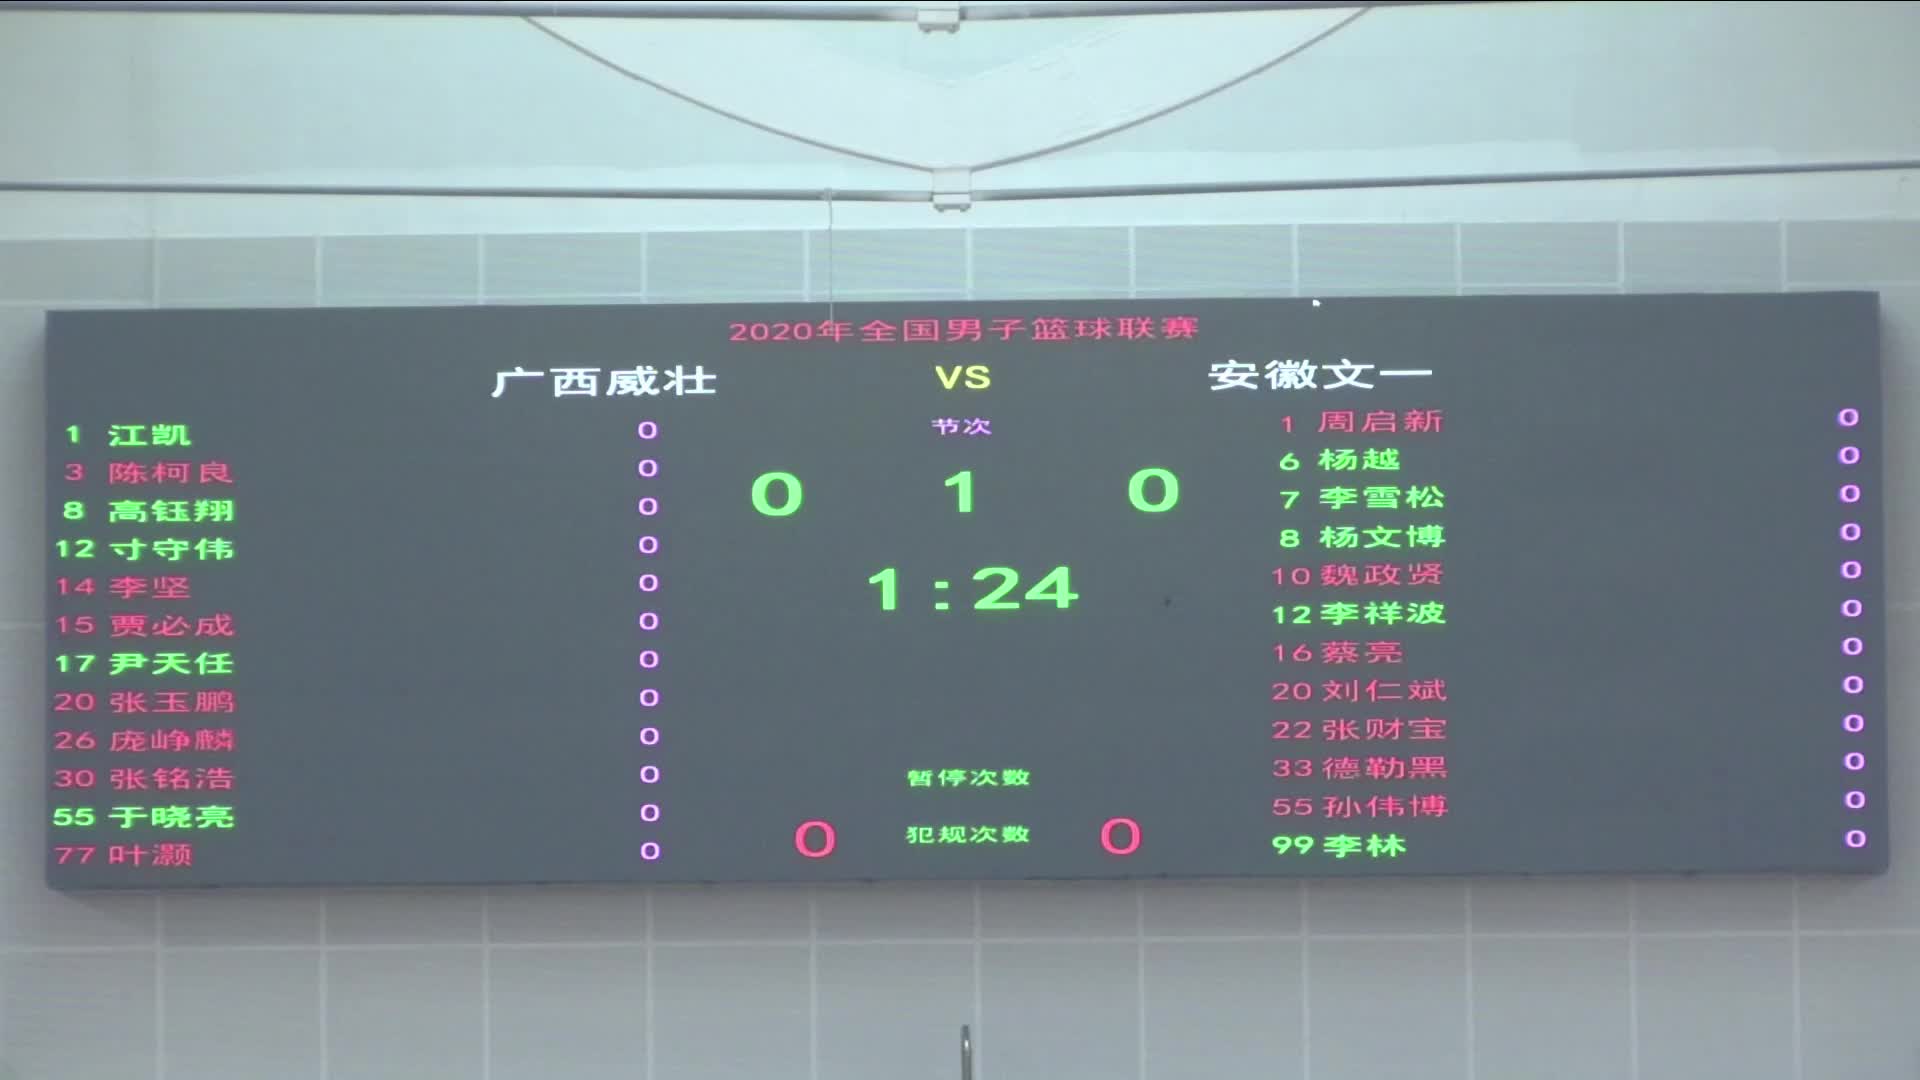 广西vs安徽 NBL篮球联赛102902